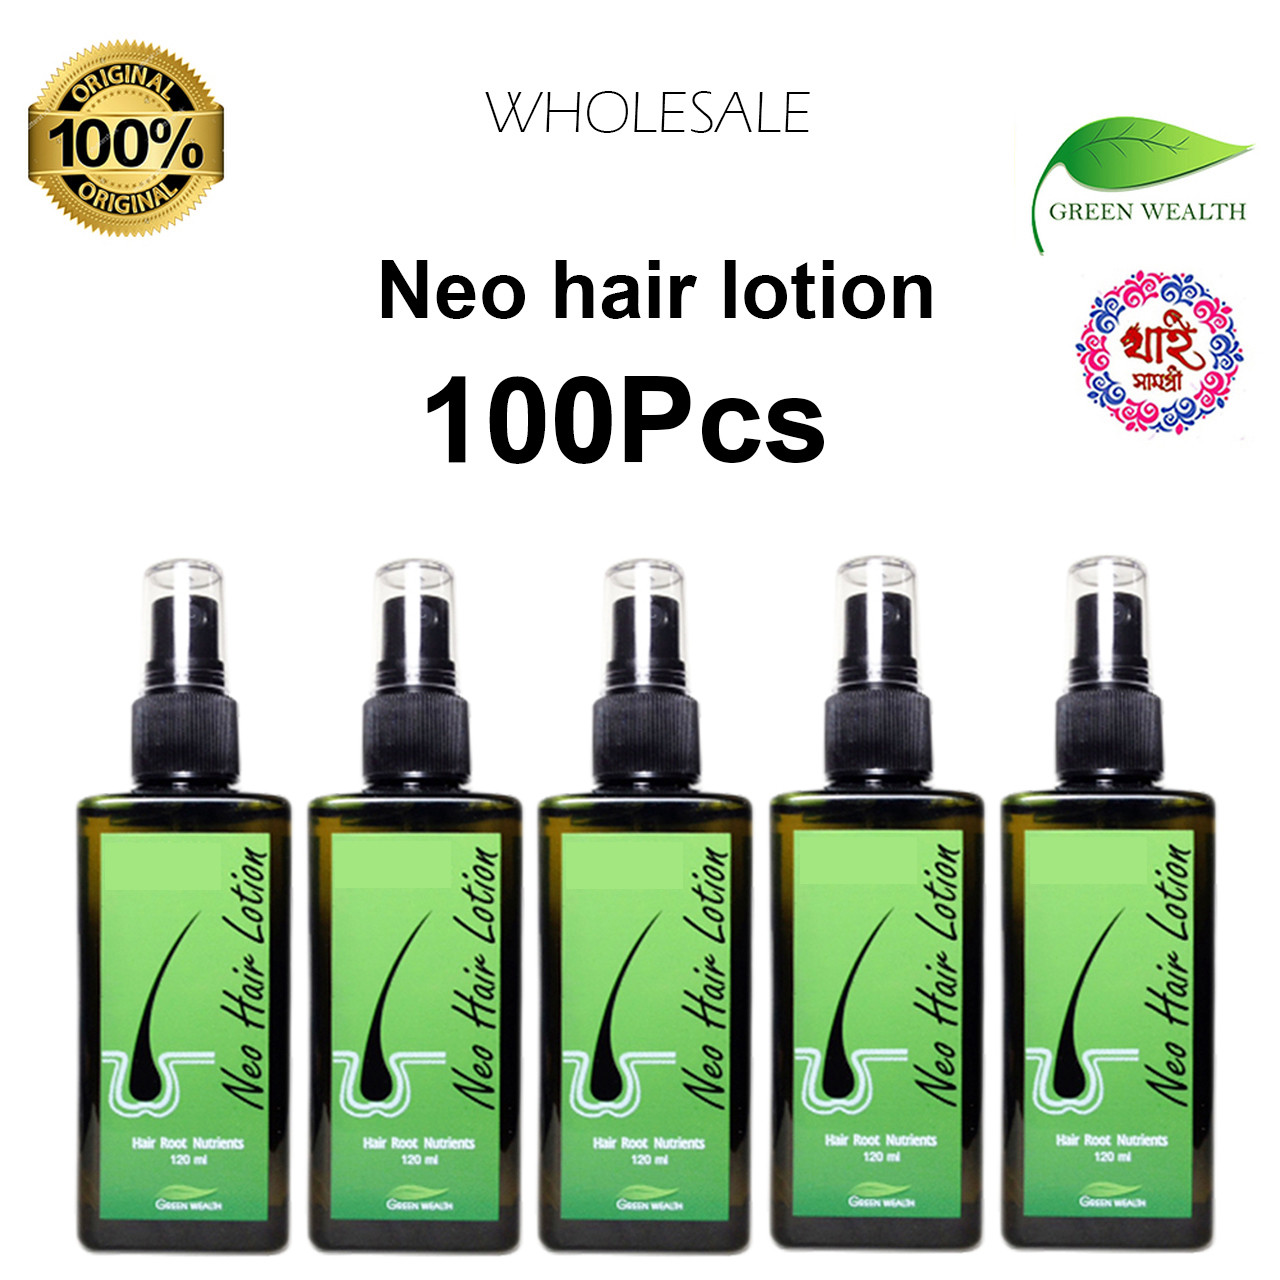 2x Neo Hair Lotion Natural Hair Loss Treatment Hair Regrowth - Etsy